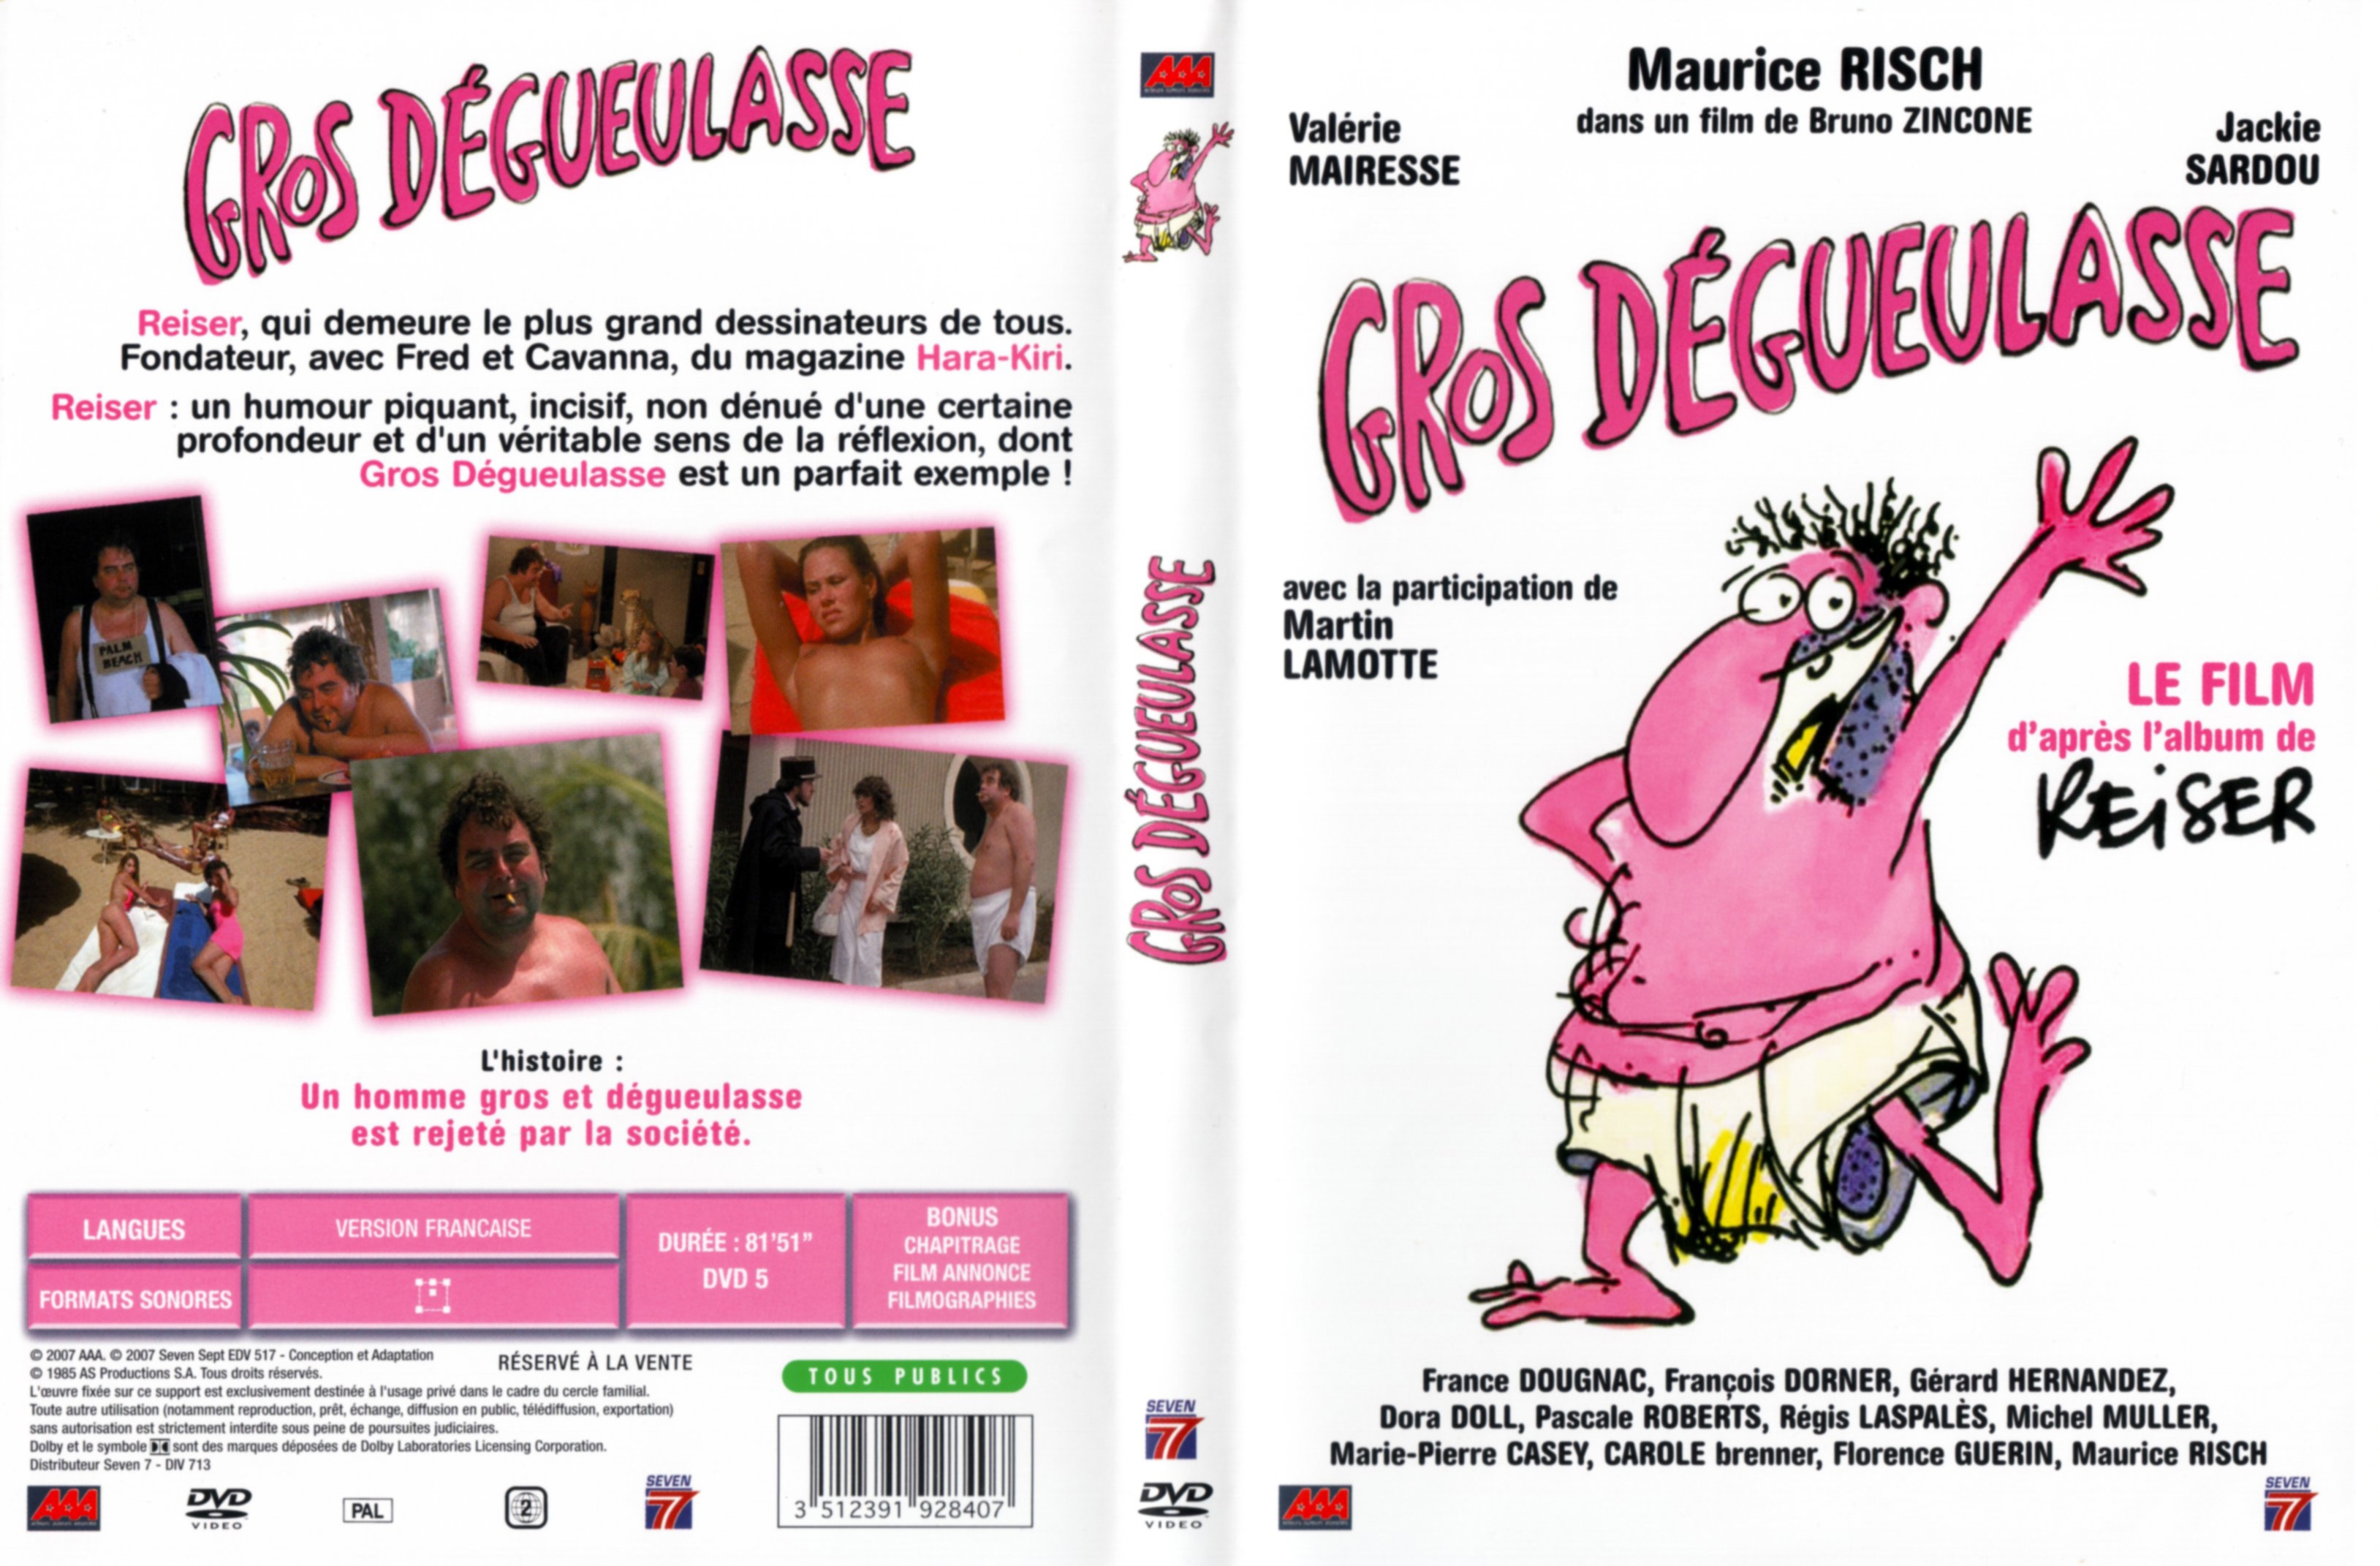 Jaquette DVD Gros degueulasse